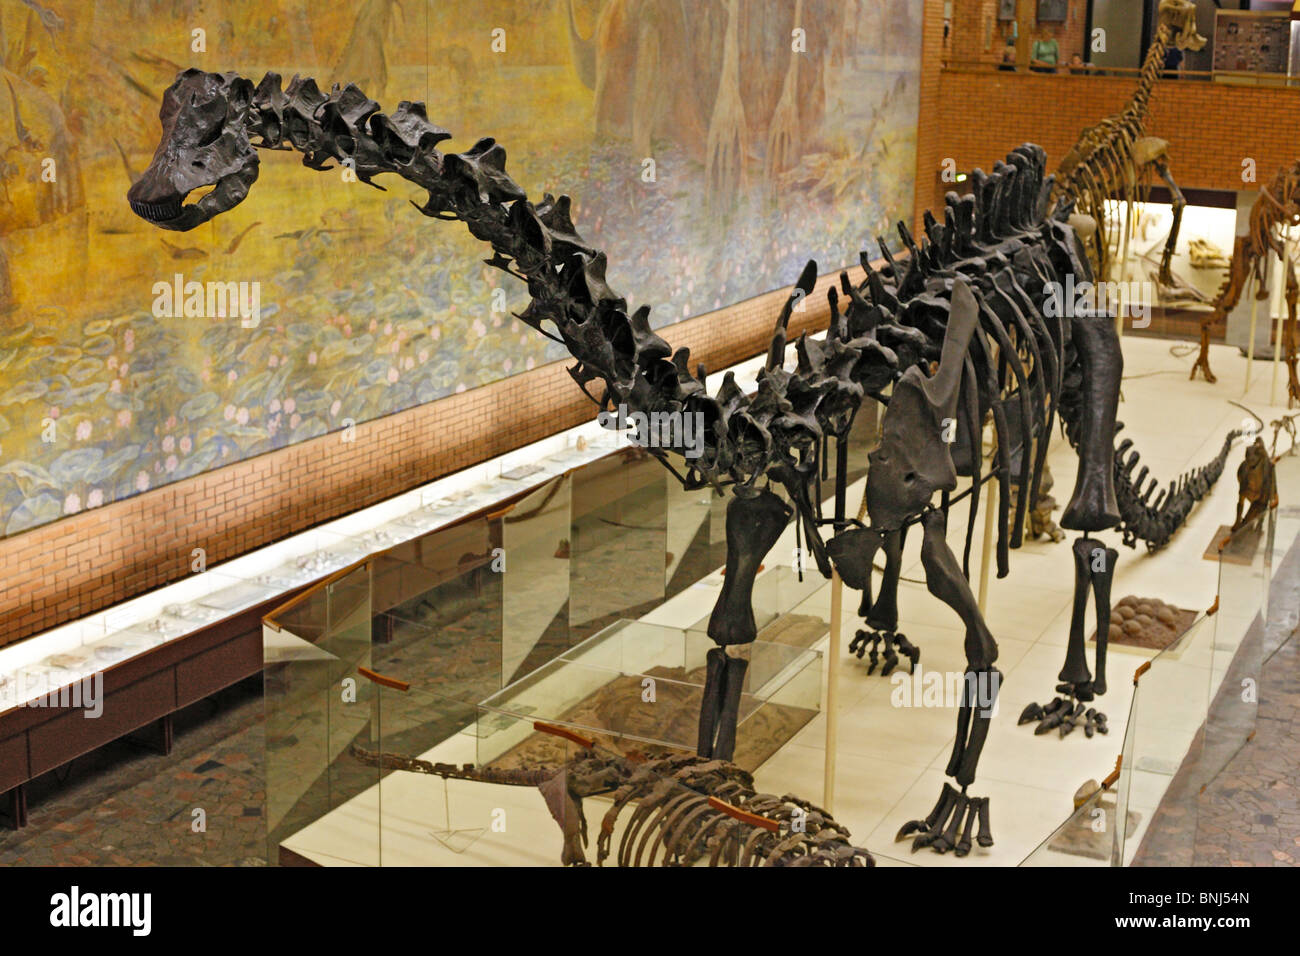 Farbe Reptil Reptilien alten Dinosaurier Dinosaurier Paläontologischen Museum Moskau Russland Skelett Knochen Knochen gigantischen Dino Dinos Stockfoto